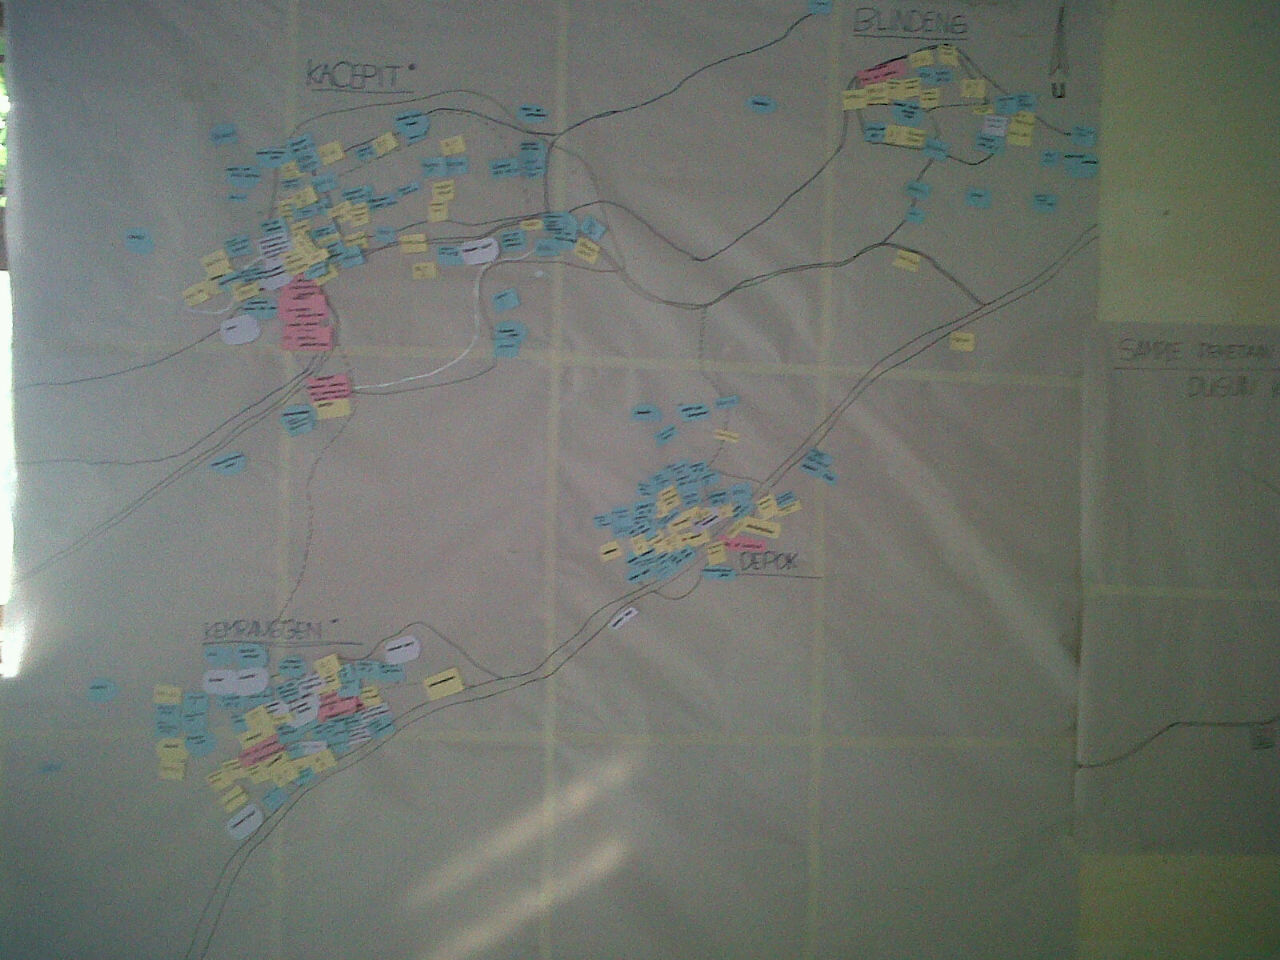 Peta aset dan potensi Desa Wulungsari yang dibuat oleh para kader pembaharuan desa